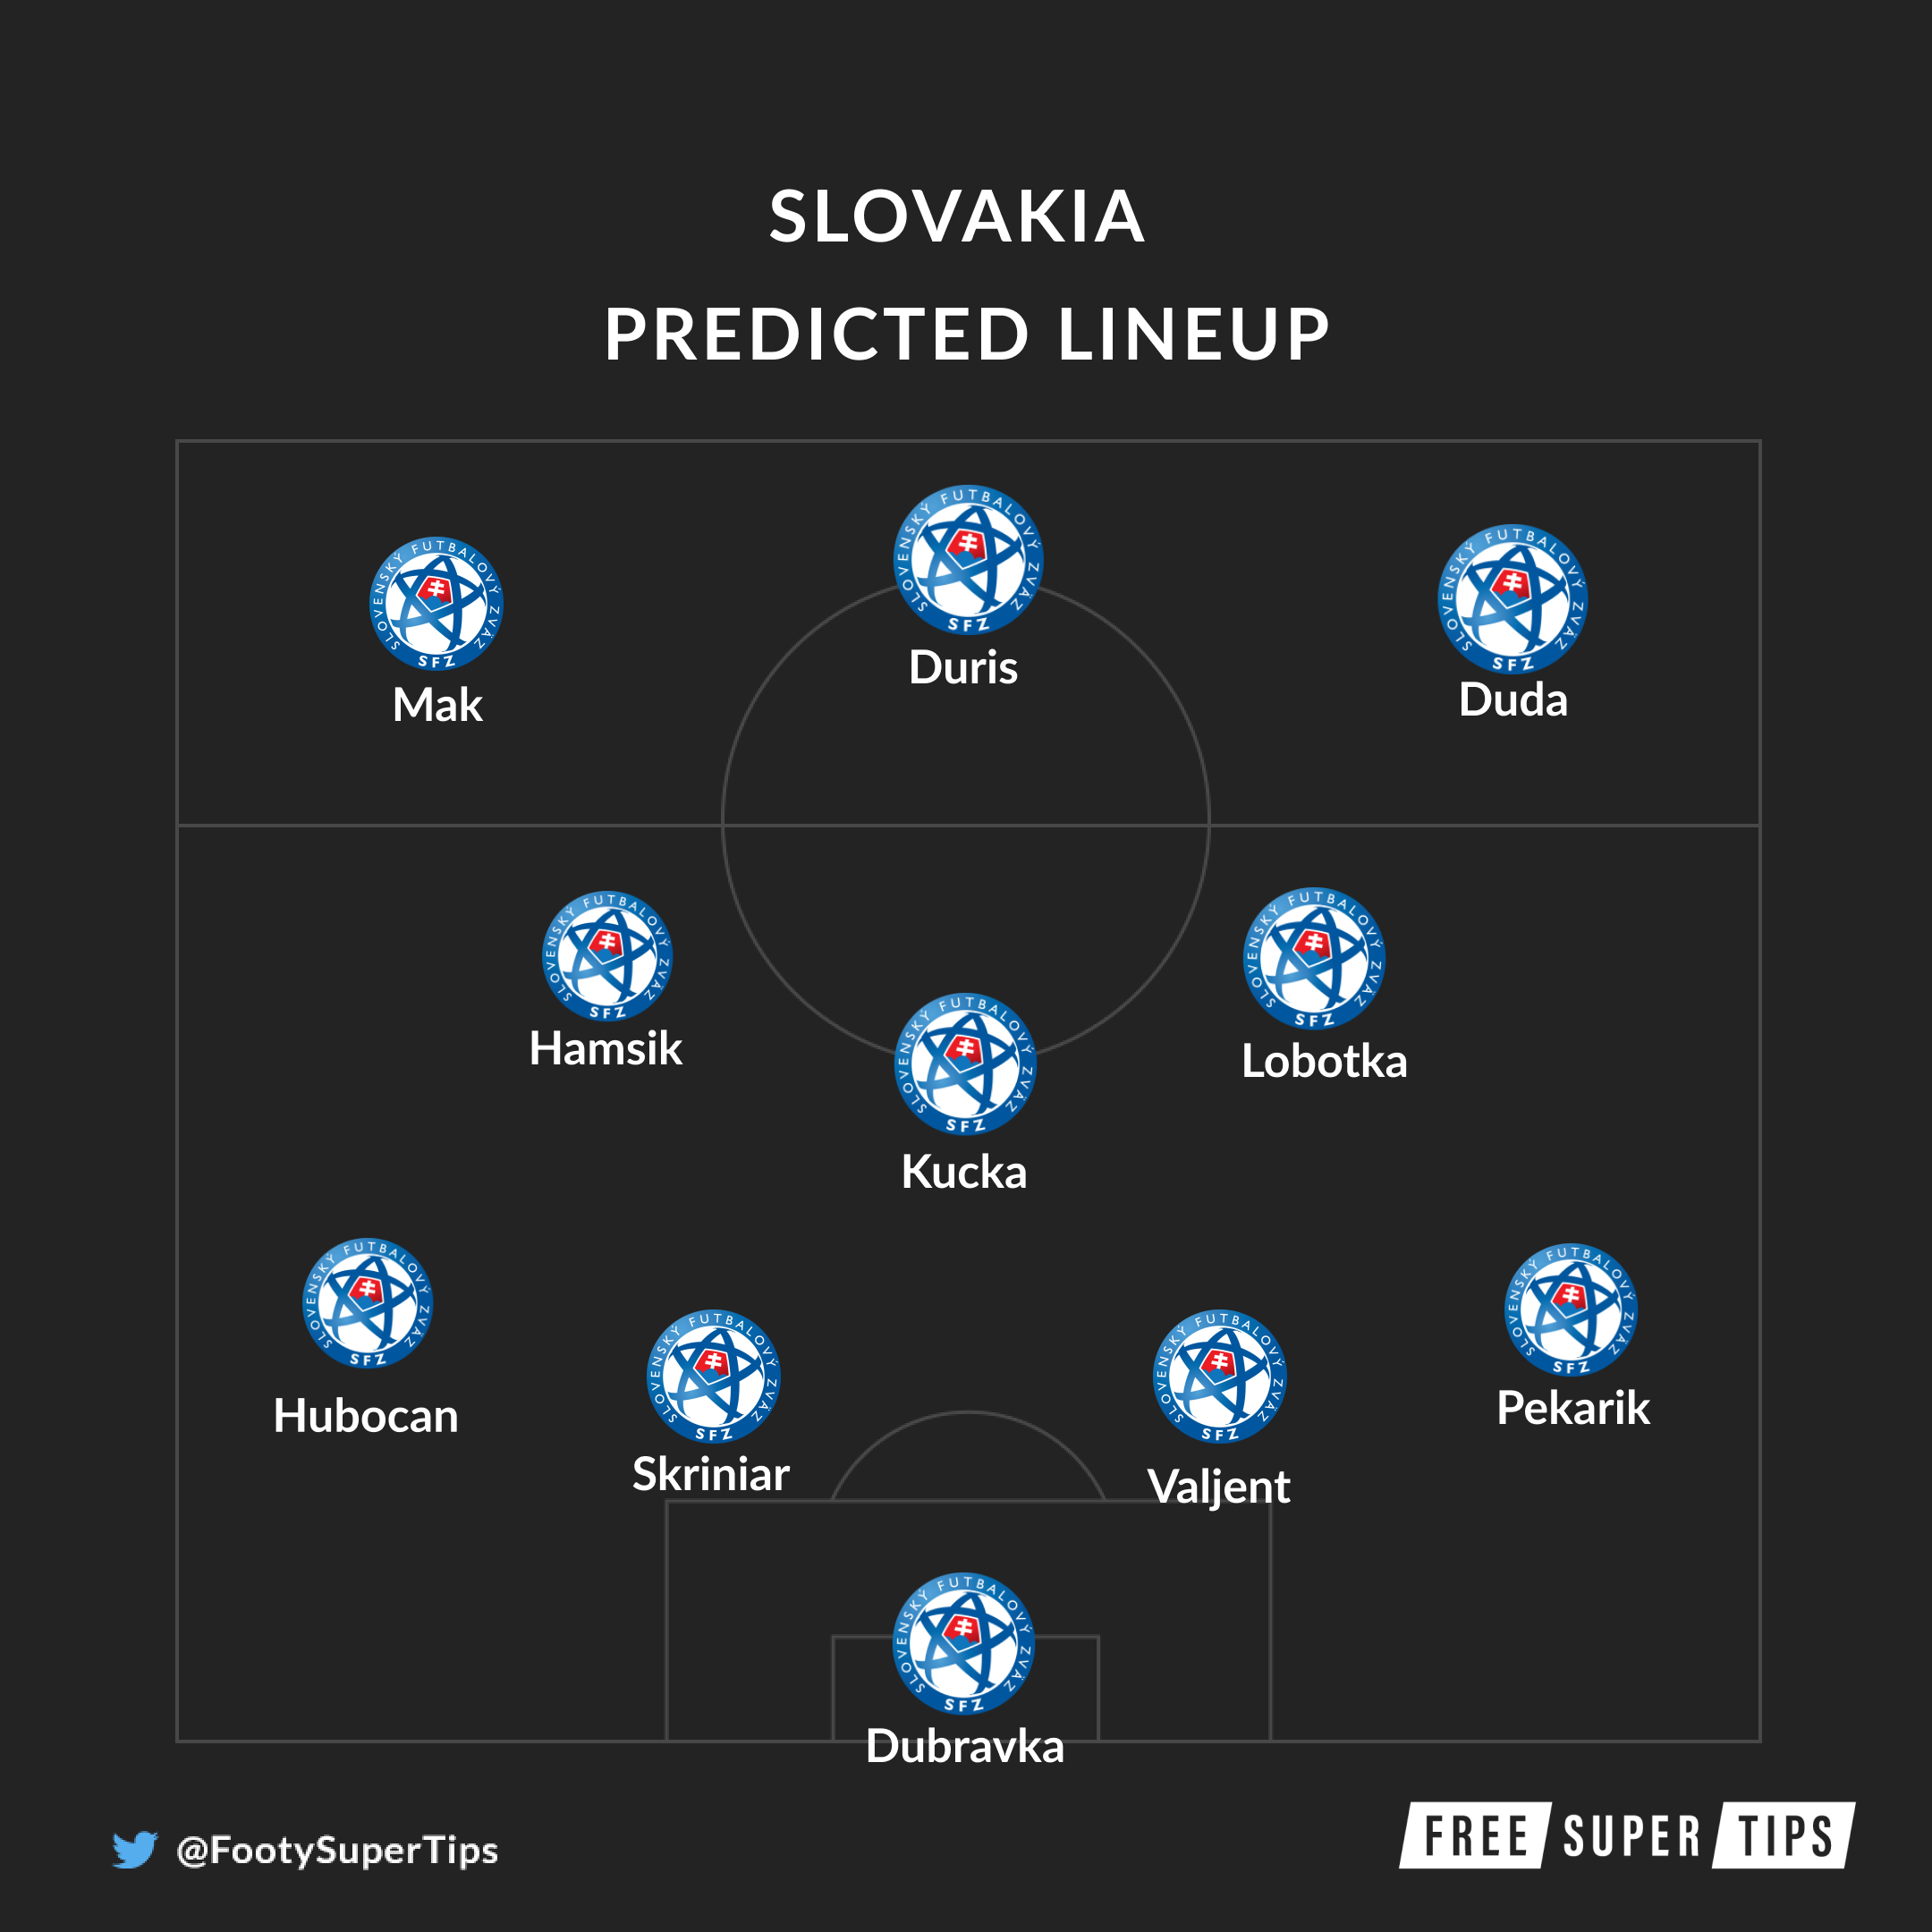 Slovakia predicted lineup